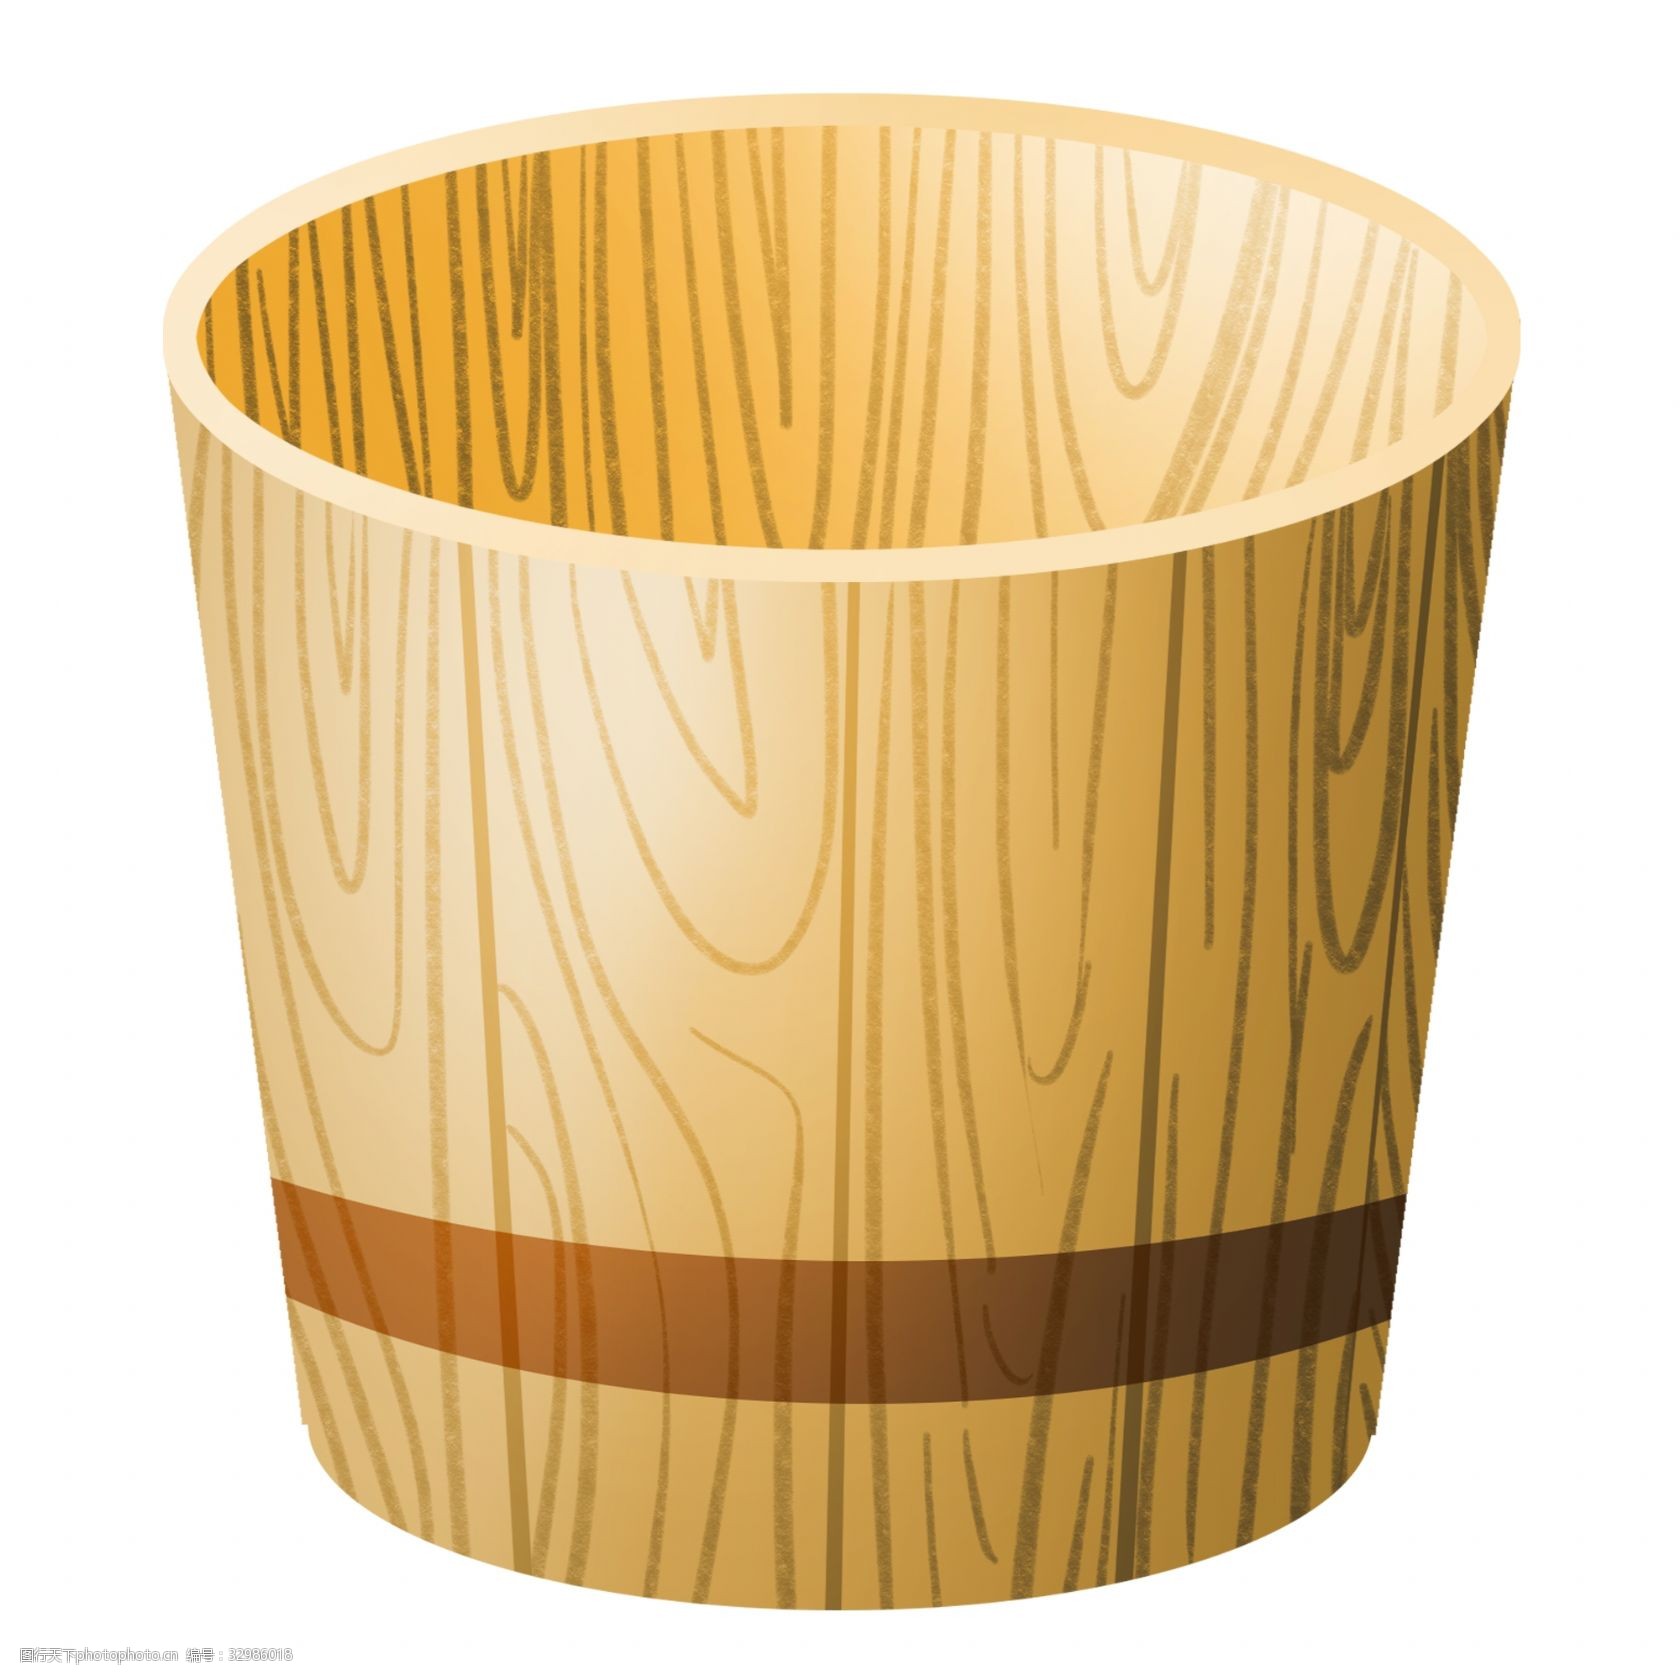 关键词:一个木质水桶插画 水桶 木桶 一个木桶 木质水桶 插画 木质桶